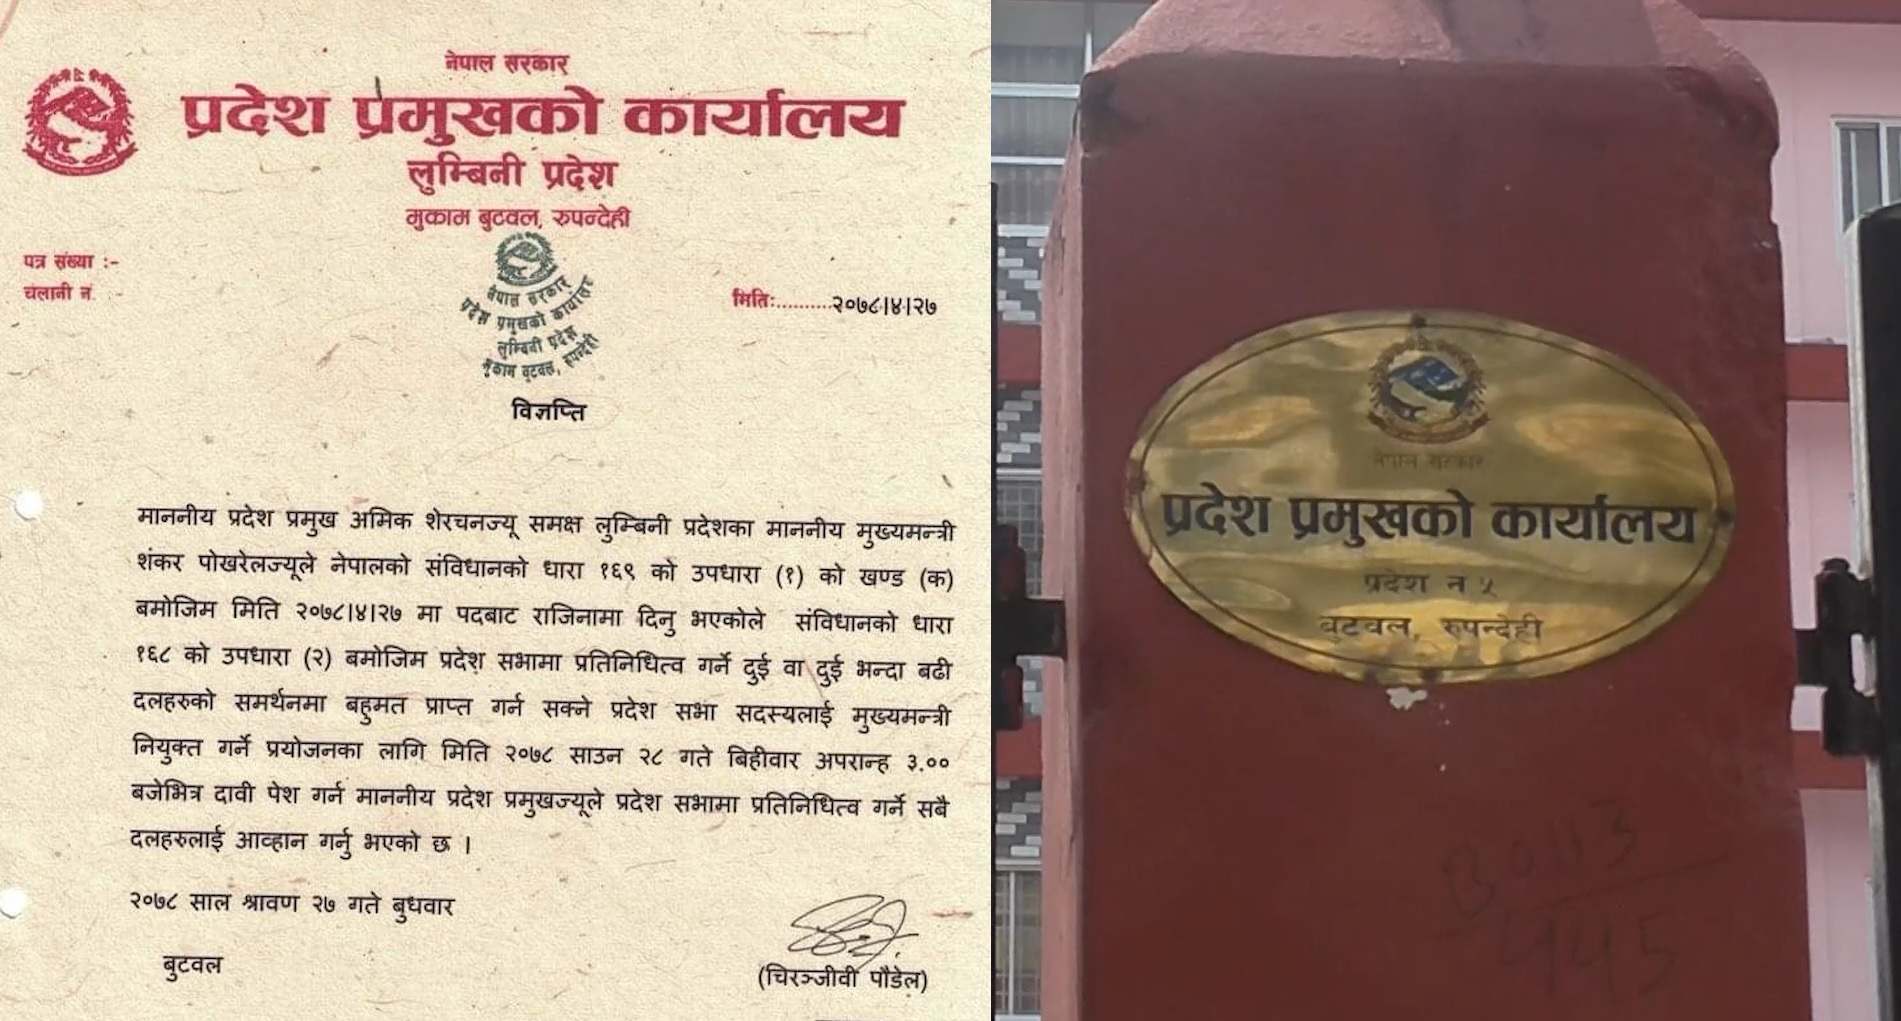 लुम्बिनी प्रदेशमा मुख्यमन्त्रीमा दाबी पेश गर्दै विपक्षी गठबन्धन